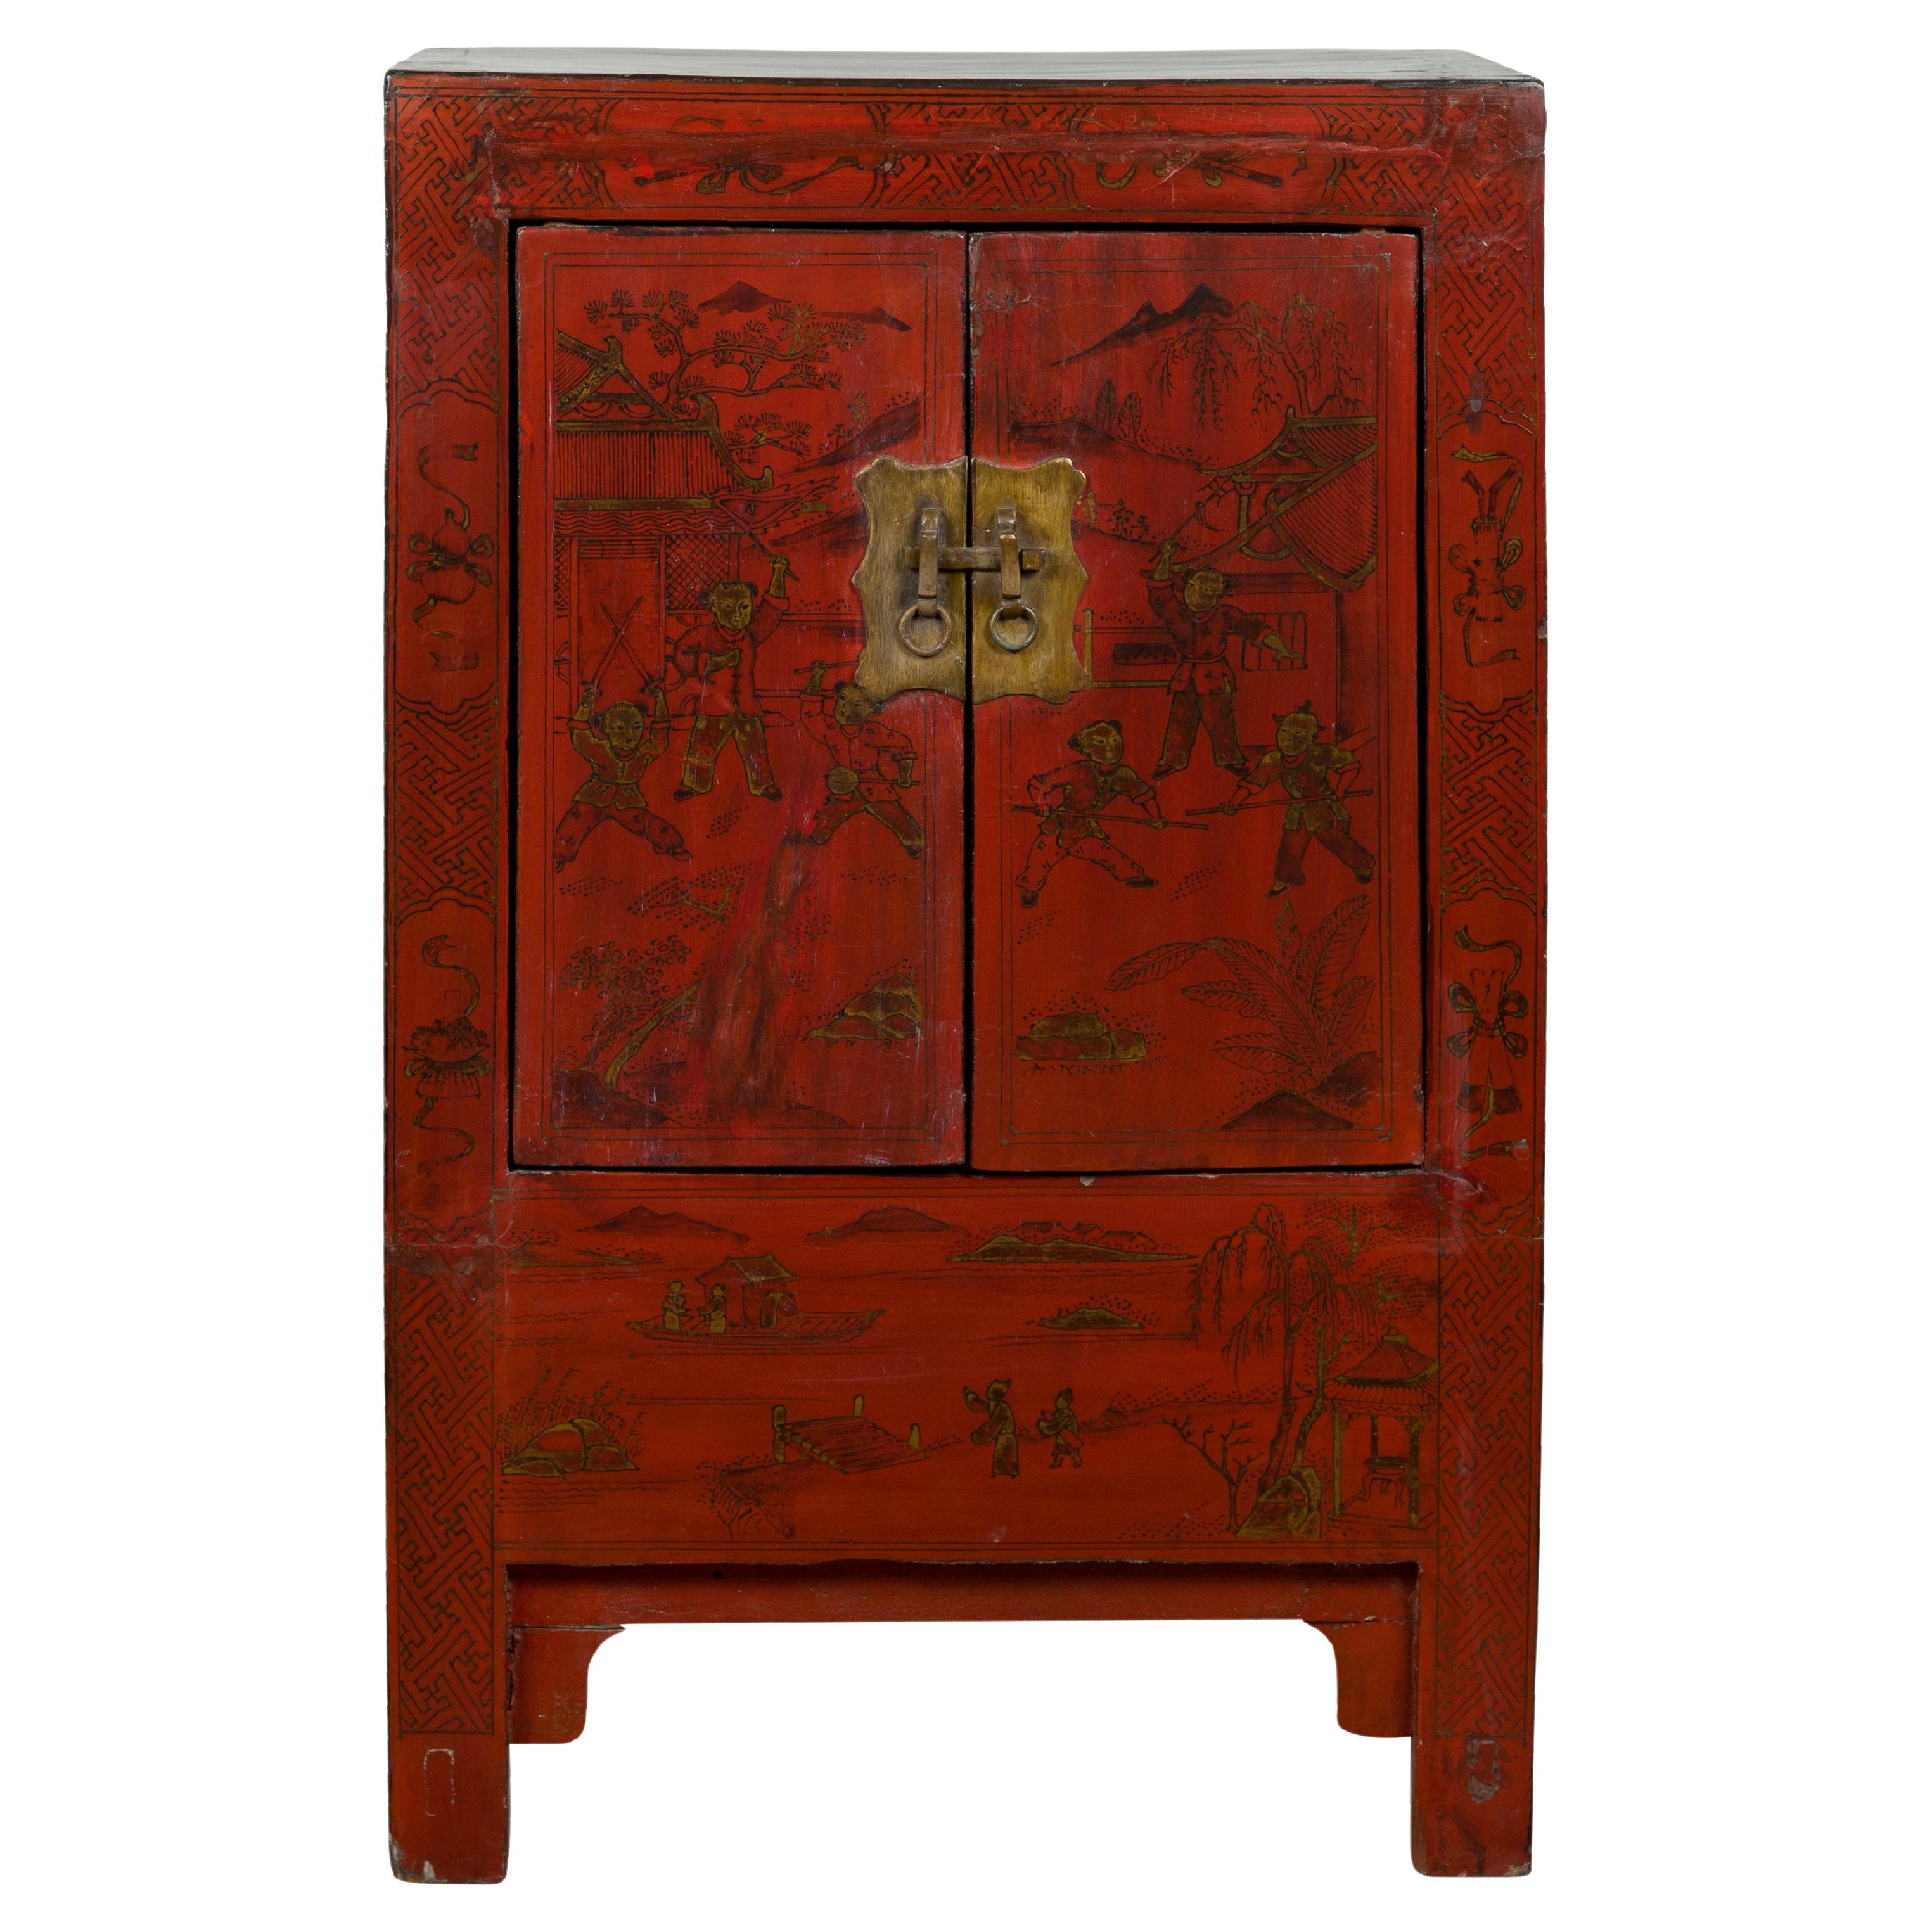 Cabinet de chevet en laque rouge de la période de la dynastie Qing avec décor peint à la main